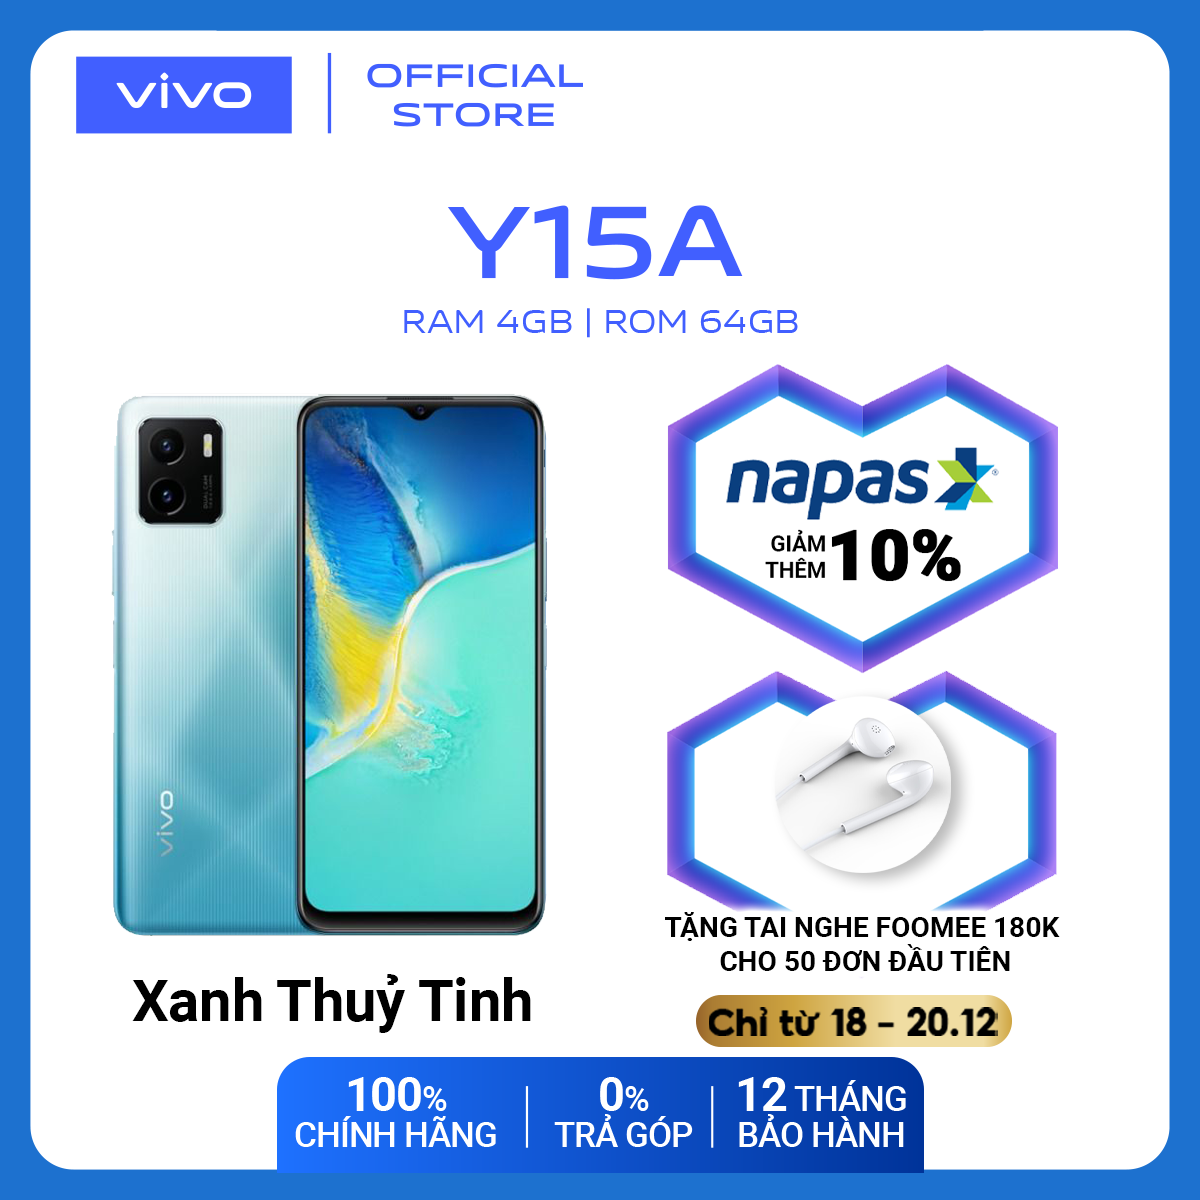 Voucher 200k giá chỉ còn 3350k | Điện thoại Vivo Y15A (4GB/64GB) – Hàng chính hãng Bảo hành 12 tháng – Trả góp 0%